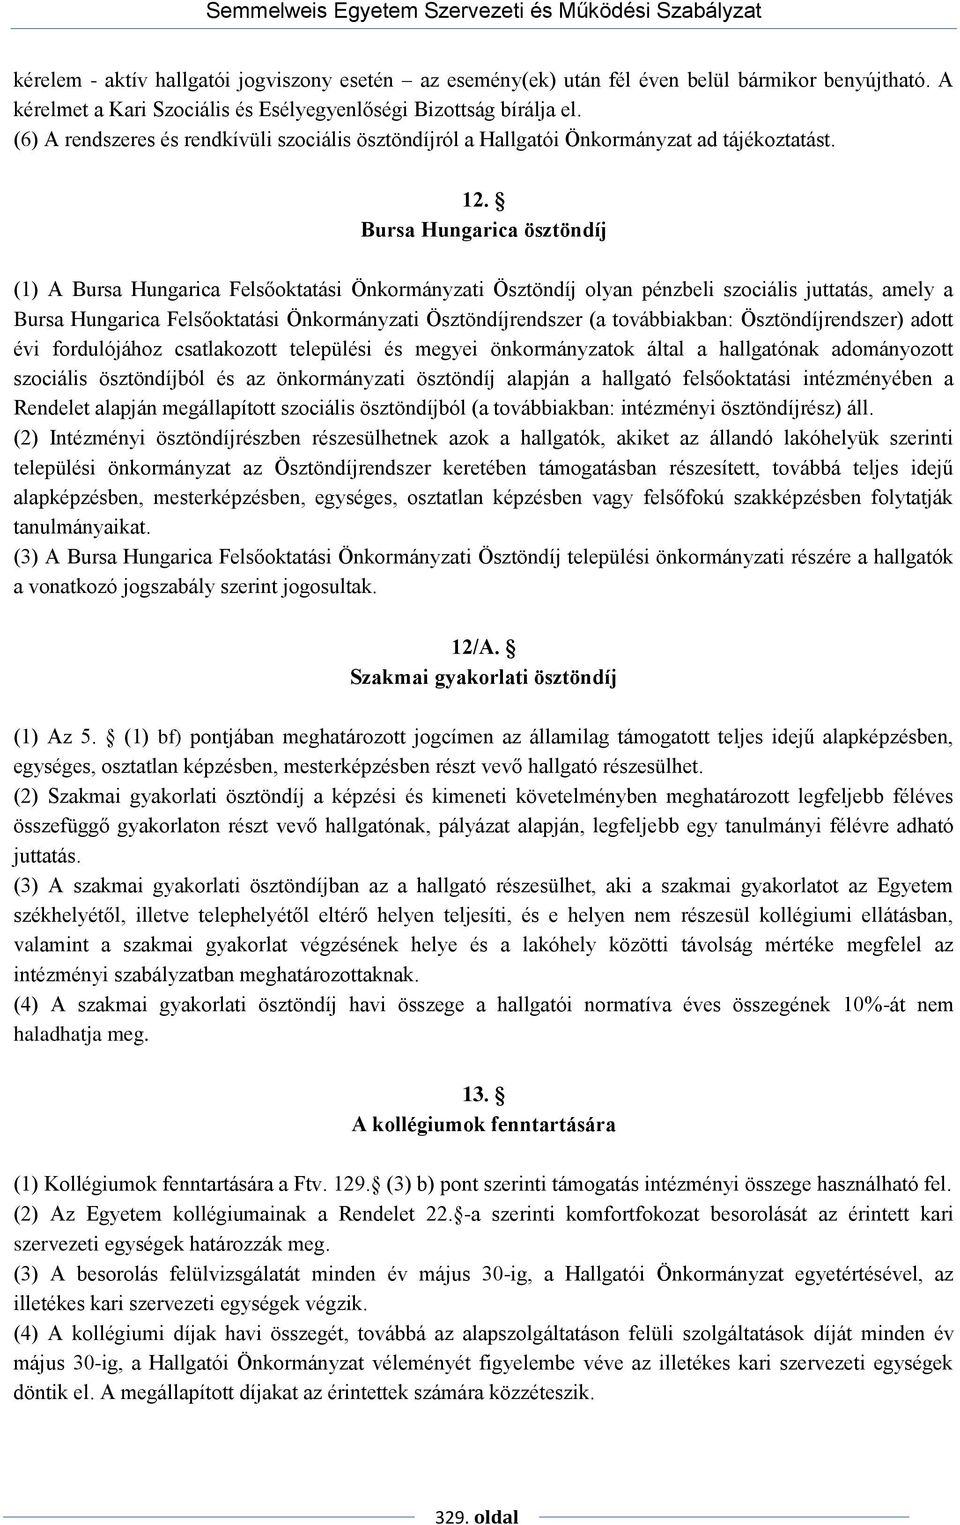 Bursa Hungarica ösztöndíj (1) A Bursa Hungarica Felsőoktatási Önkormányzati Ösztöndíj olyan pénzbeli szociális juttatás, amely a Bursa Hungarica Felsőoktatási Önkormányzati Ösztöndíjrendszer (a